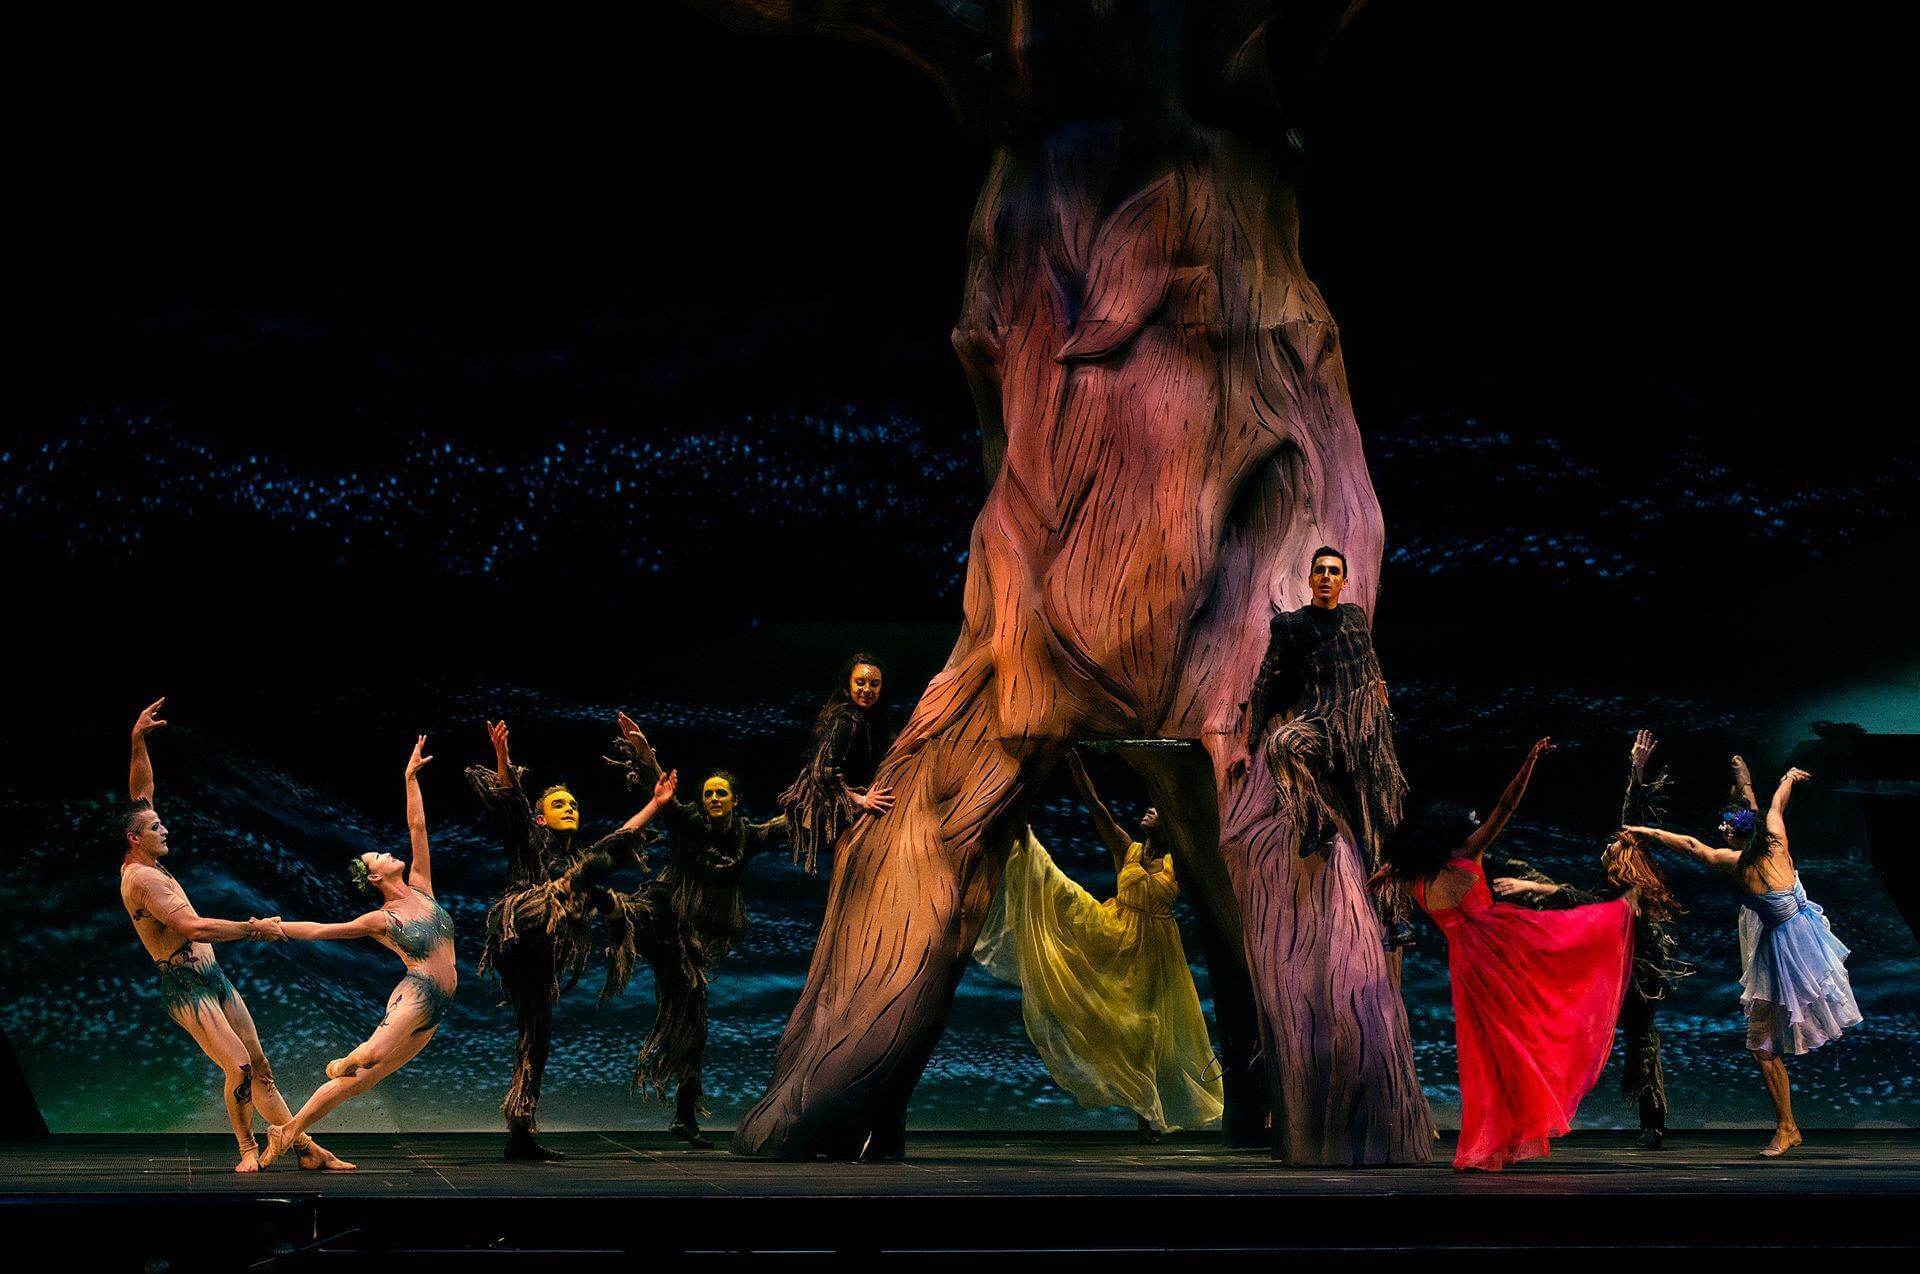 Scalada - Mater Natura by Cirque du Soleil 2014: Dansa i coreografia